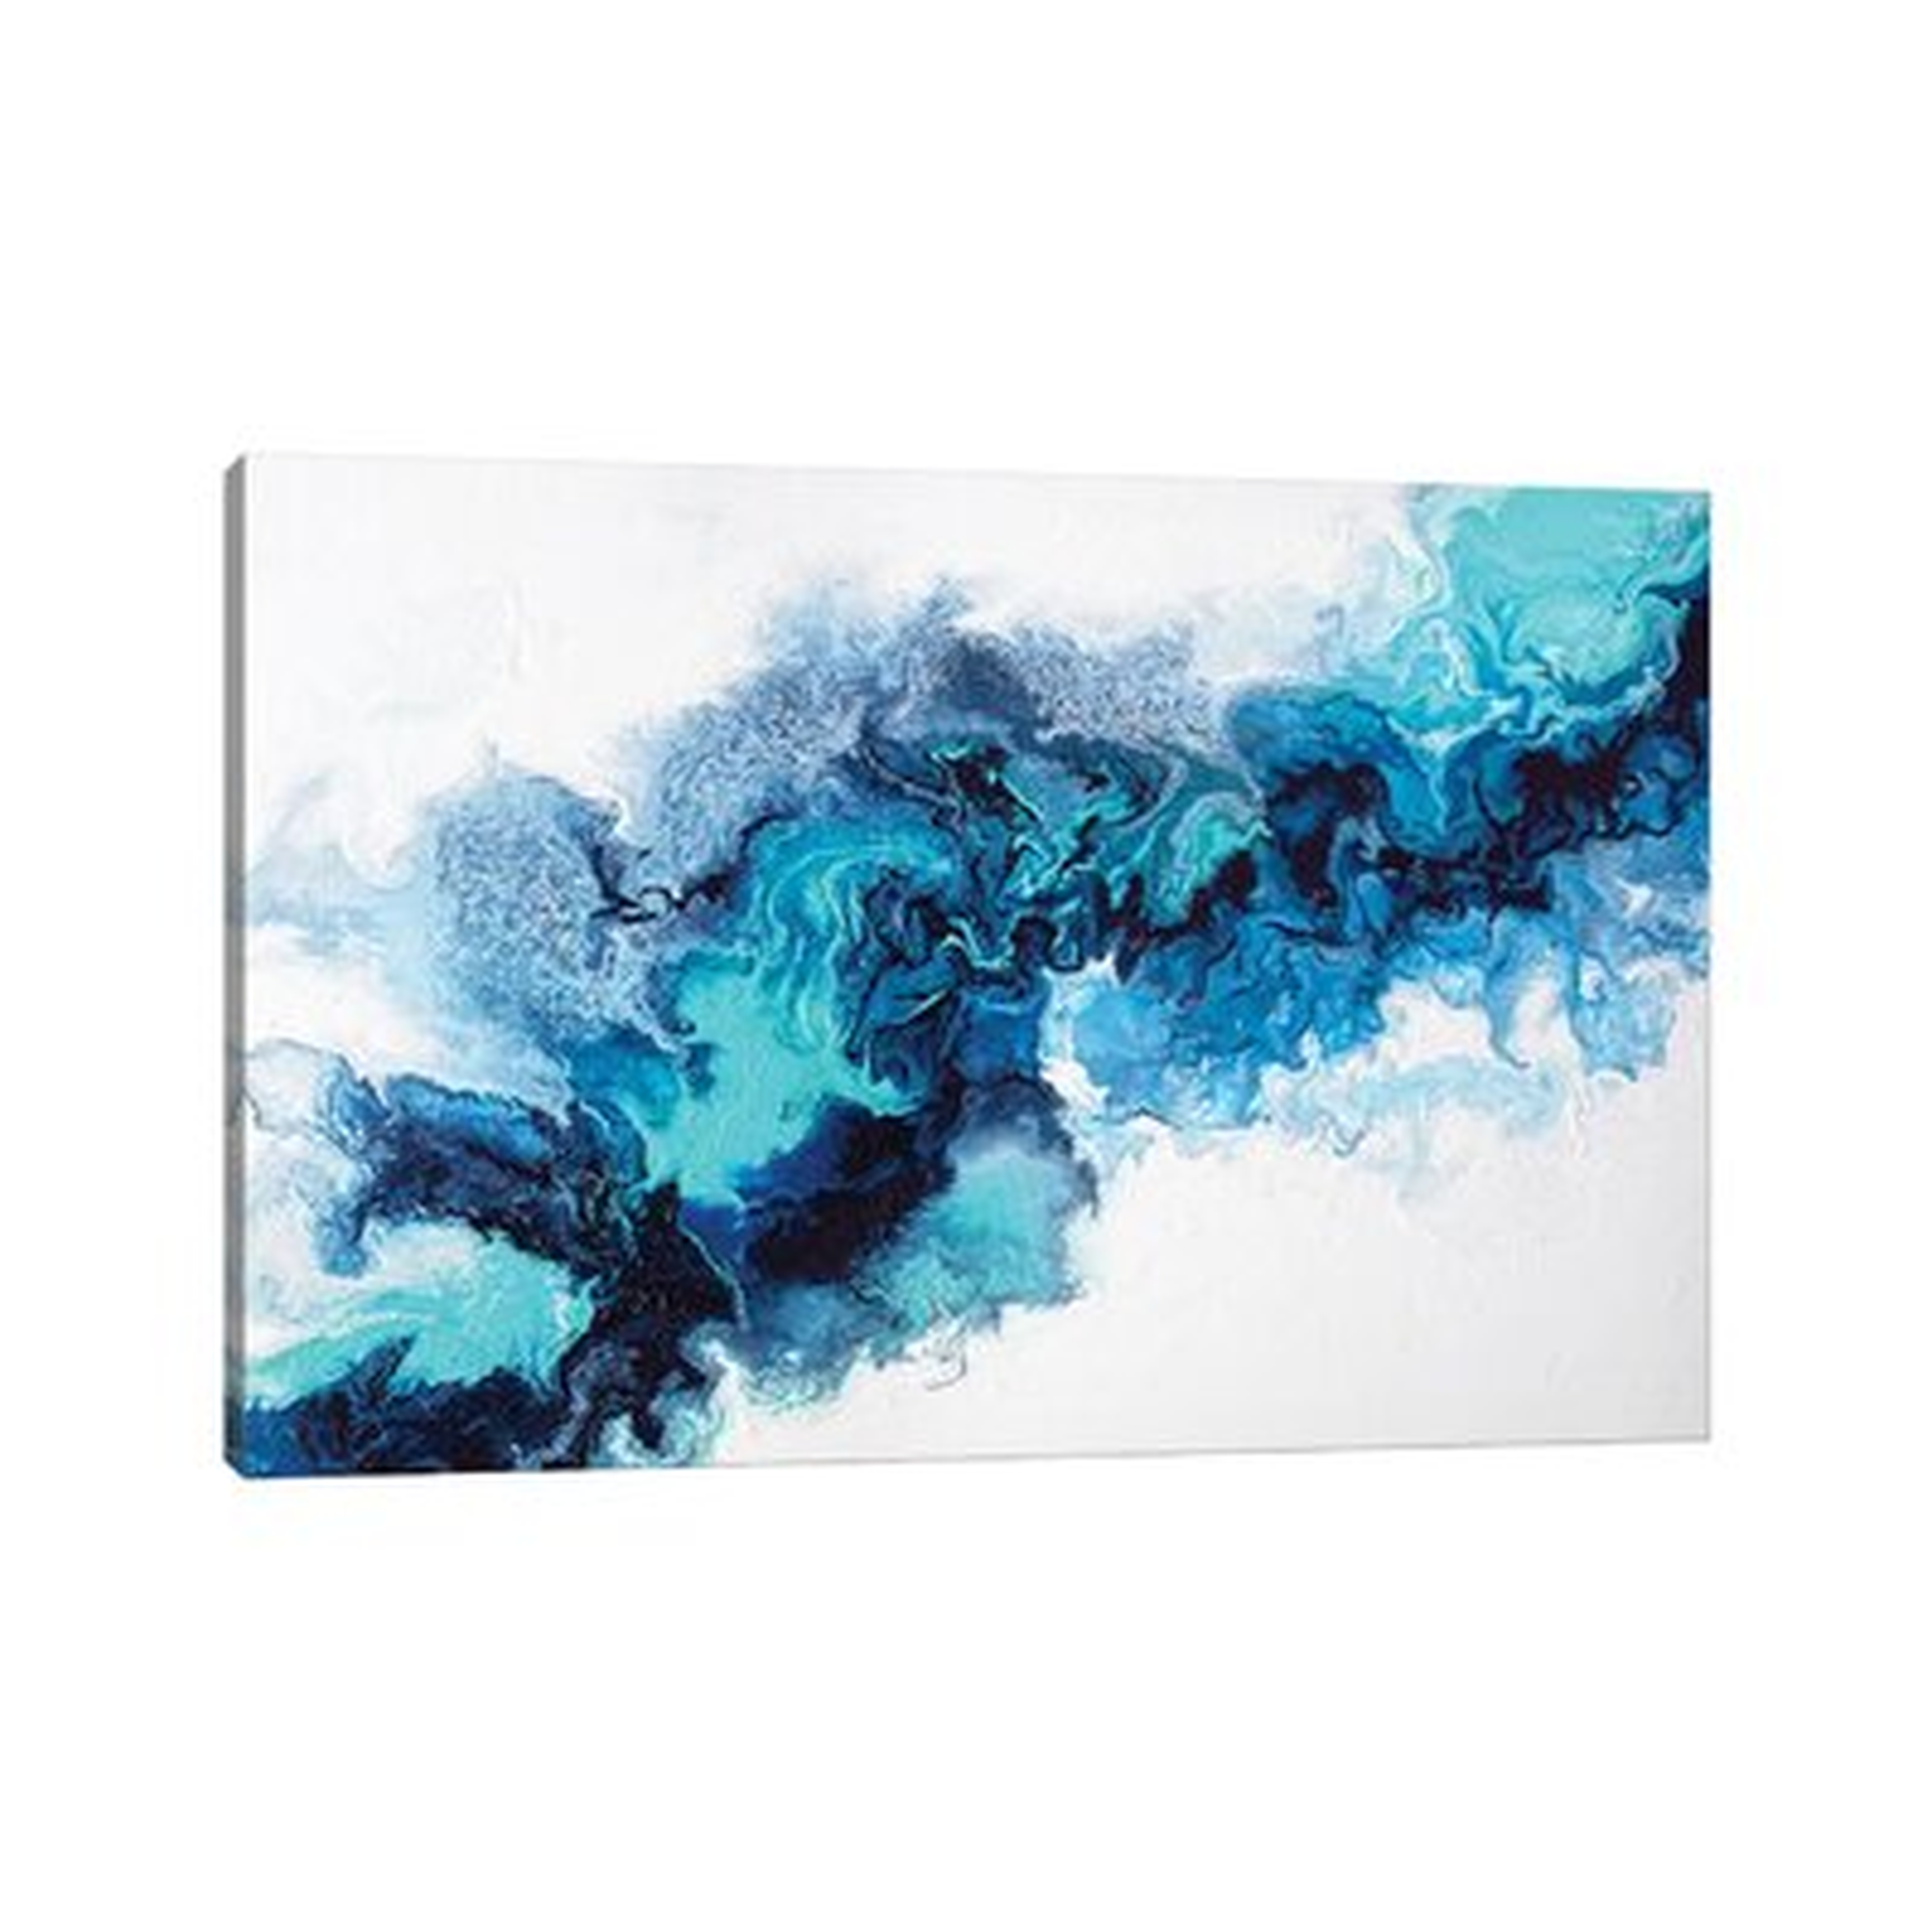 Water Elemental - Painting Print - Wayfair